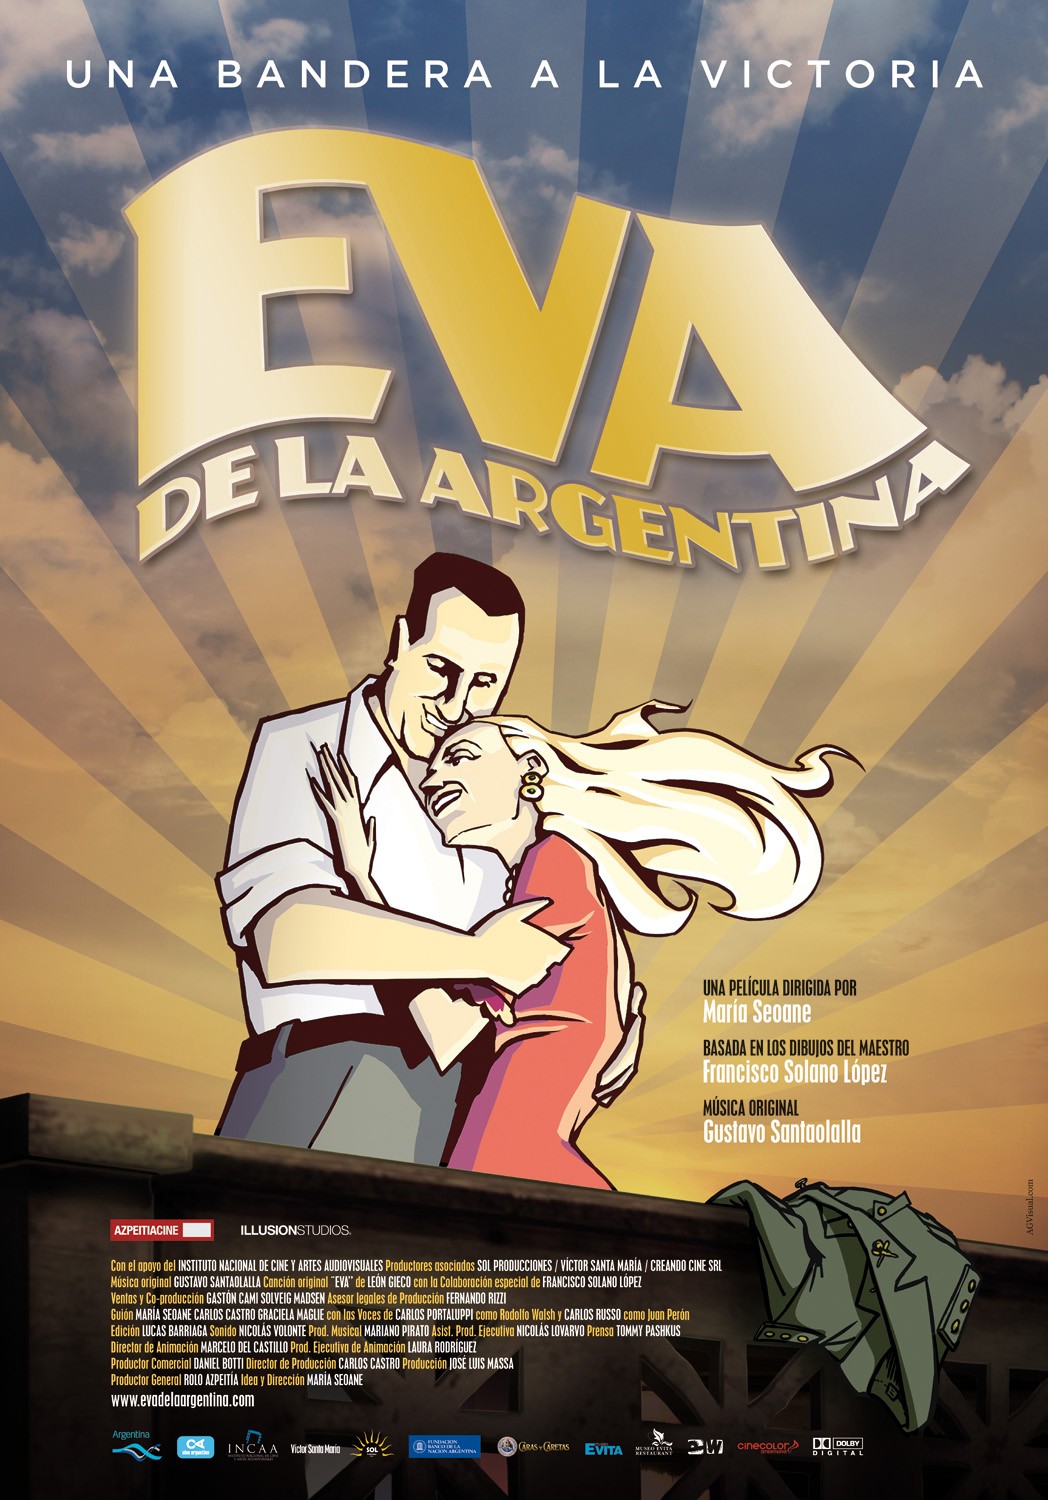 Eva de la argentina movie